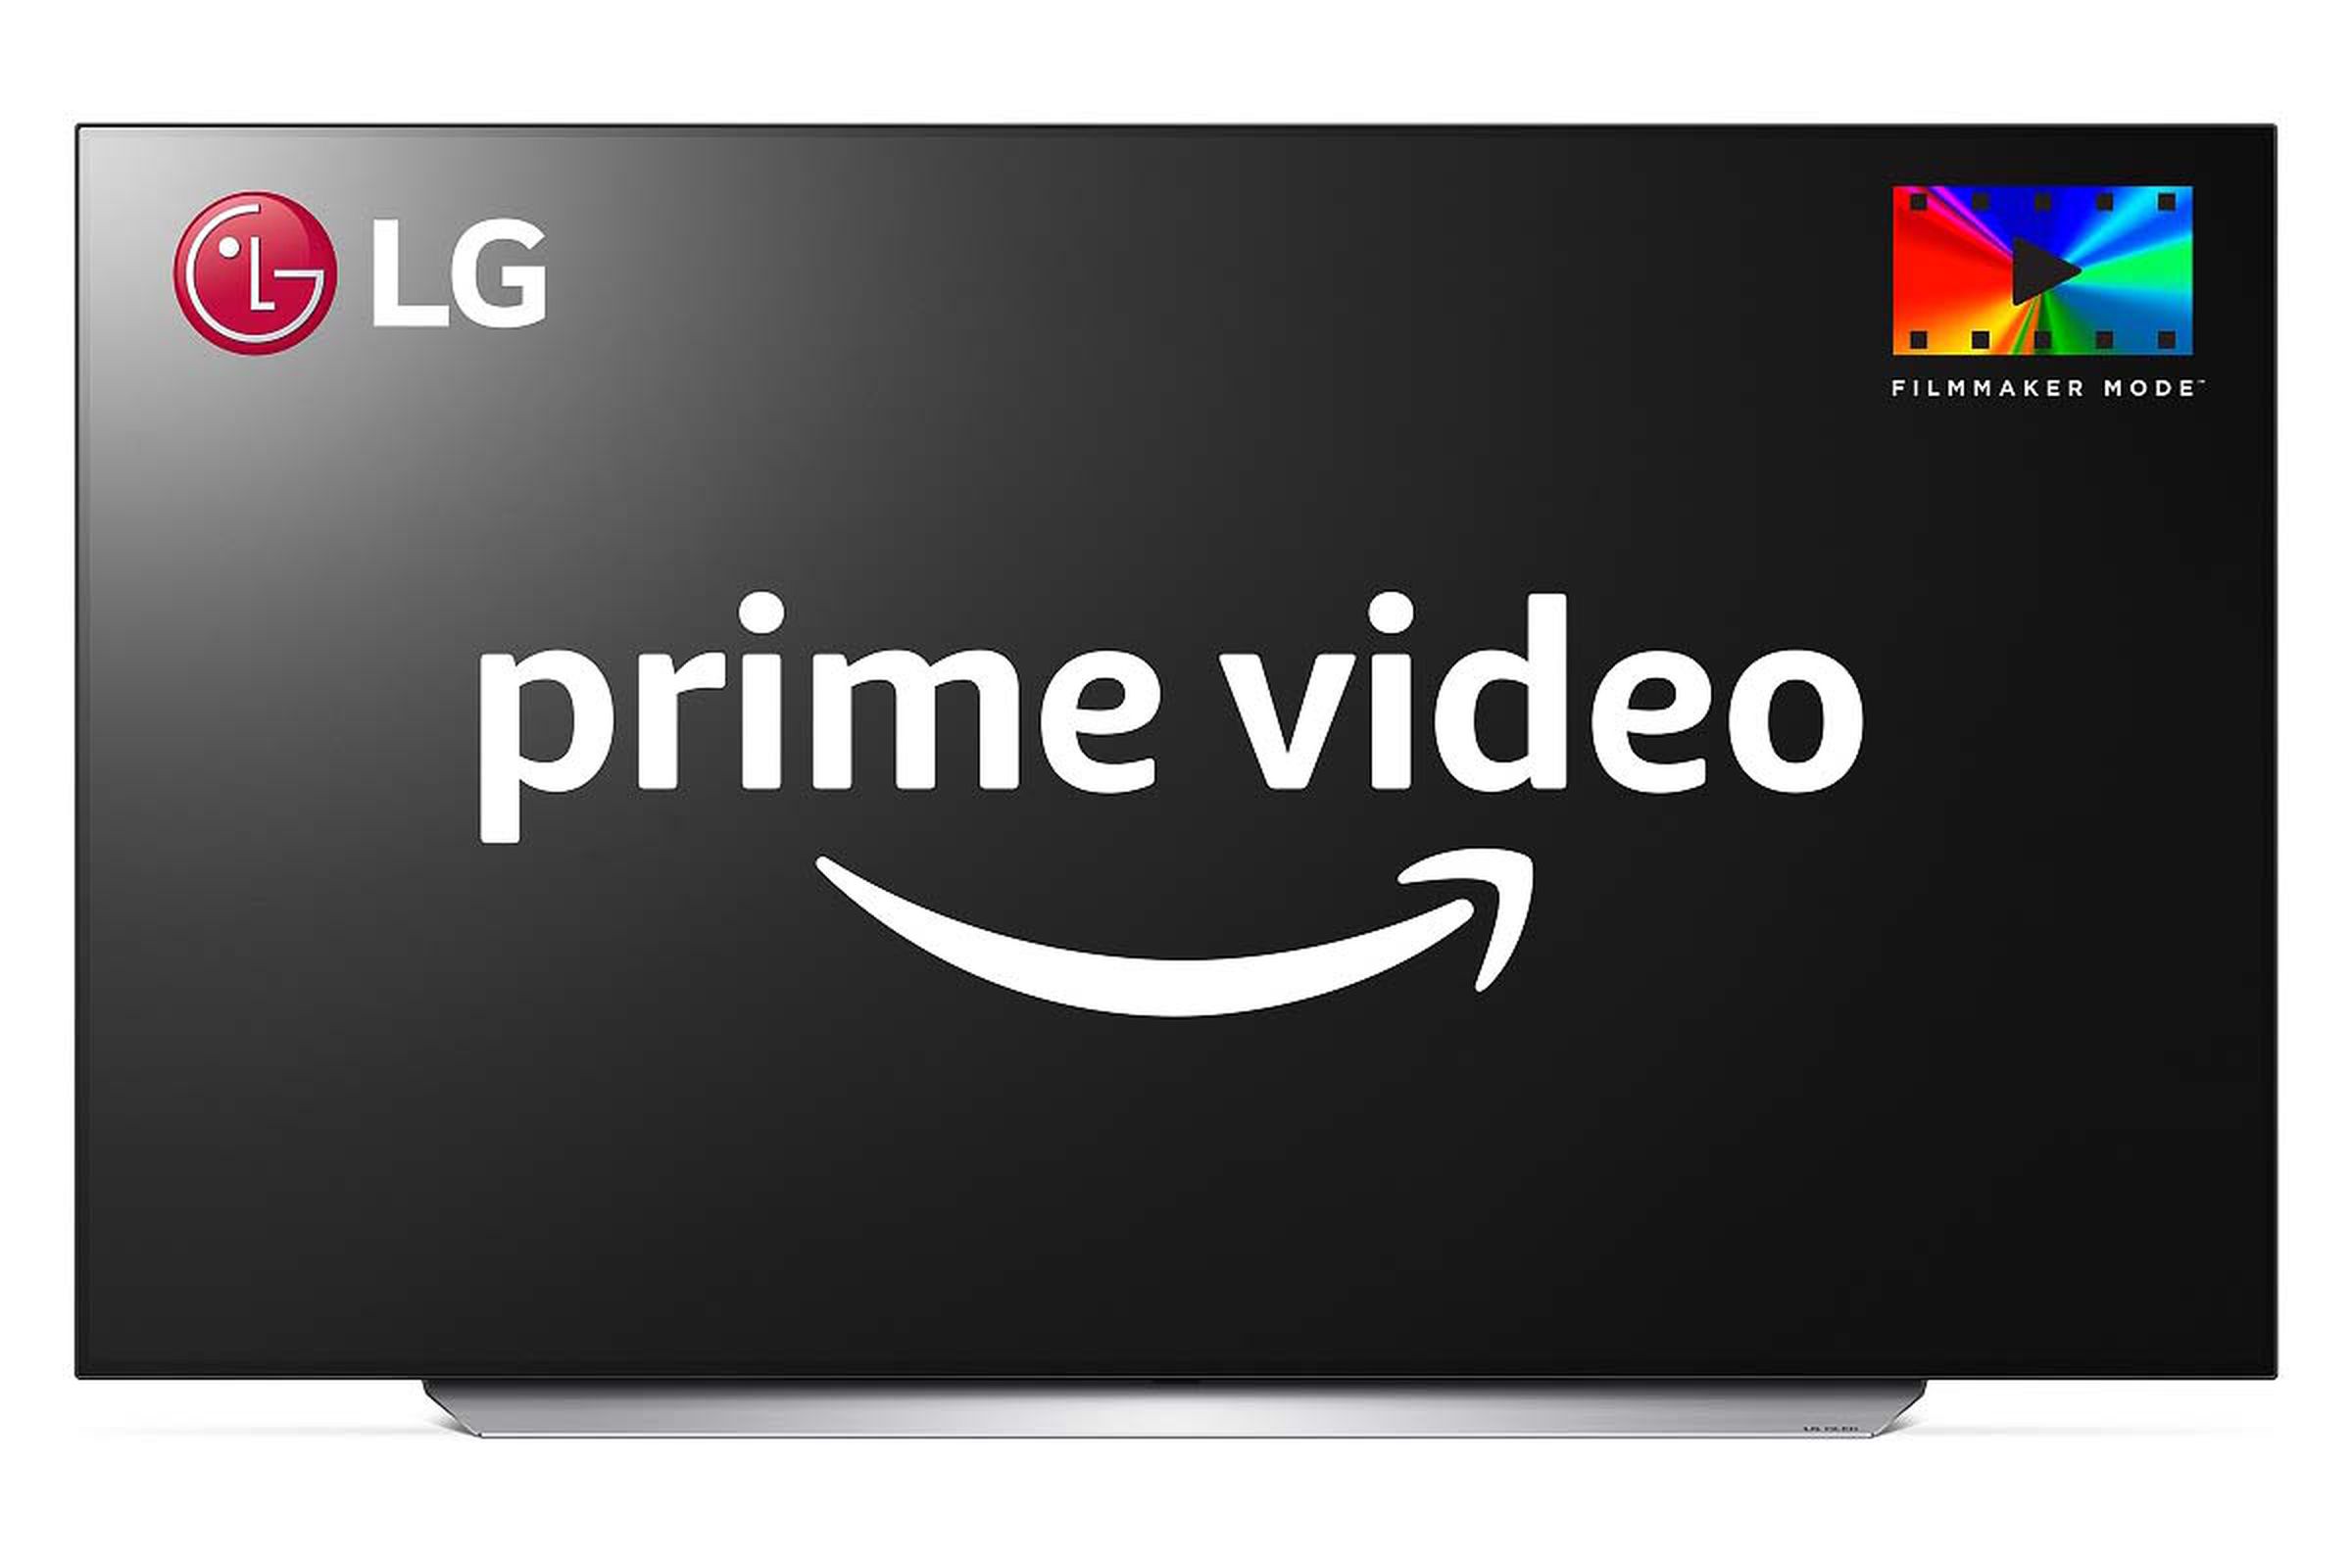 LG + Prime Video + Filmmaker Mode.